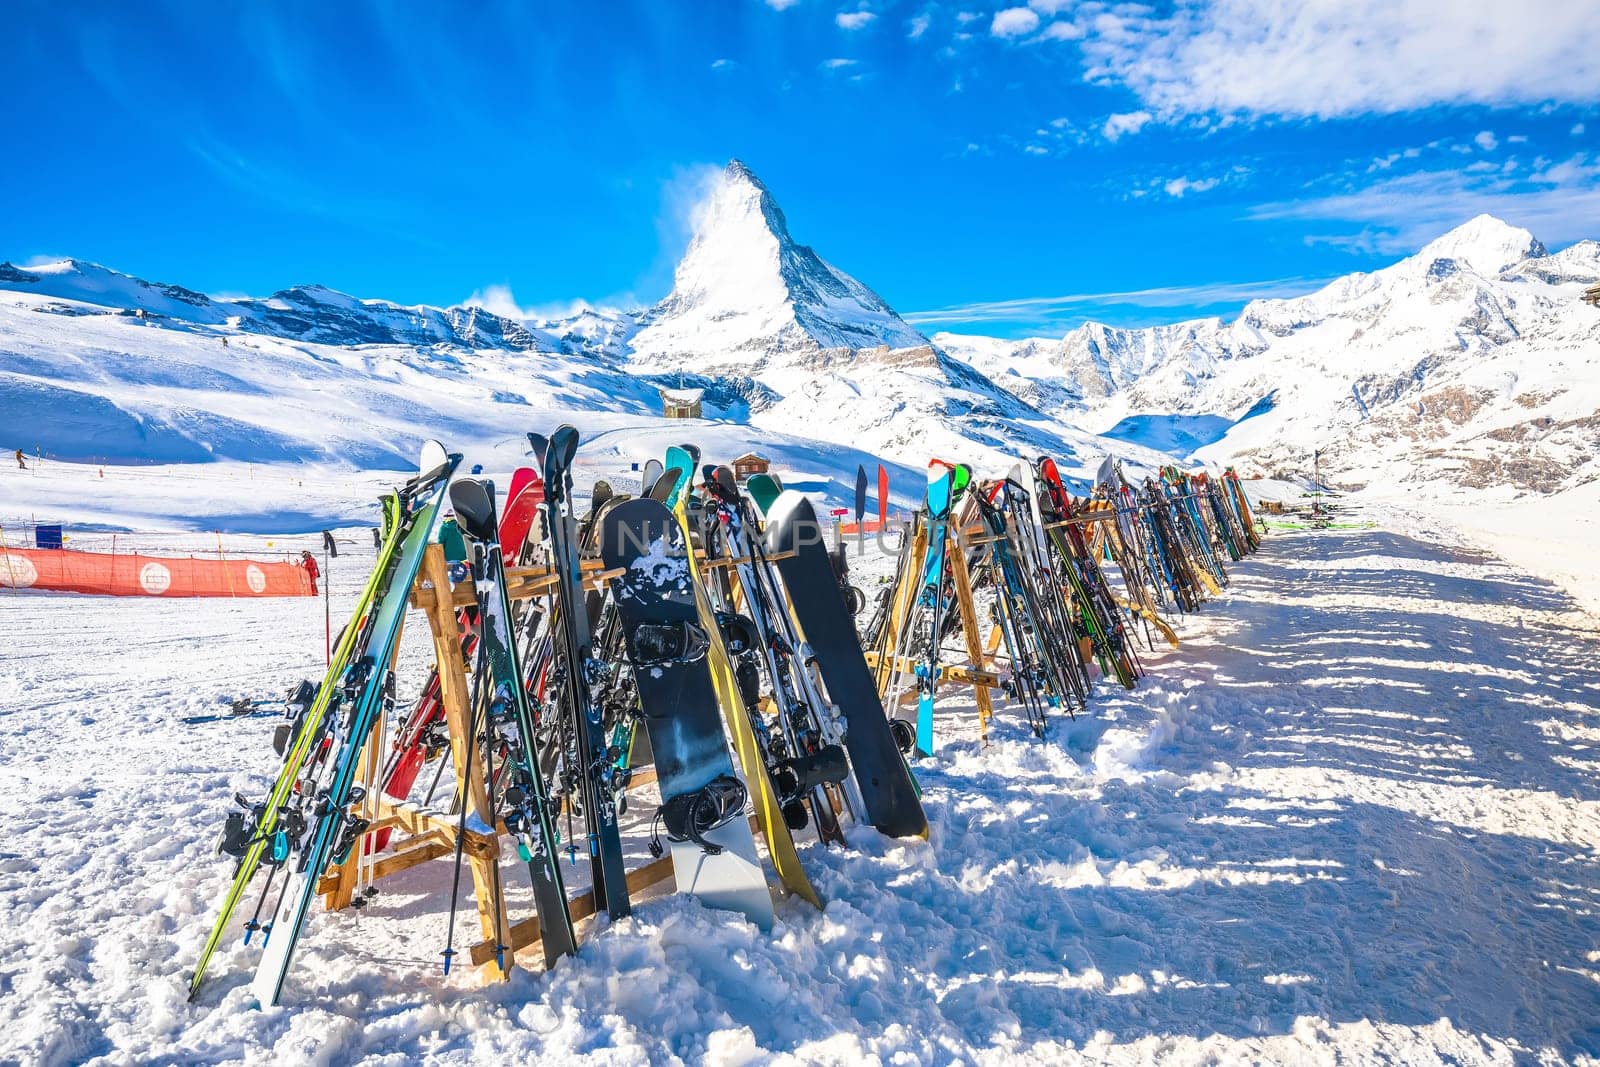 Matterhorn peak ski area in Zermatt, Valais by xbrchx